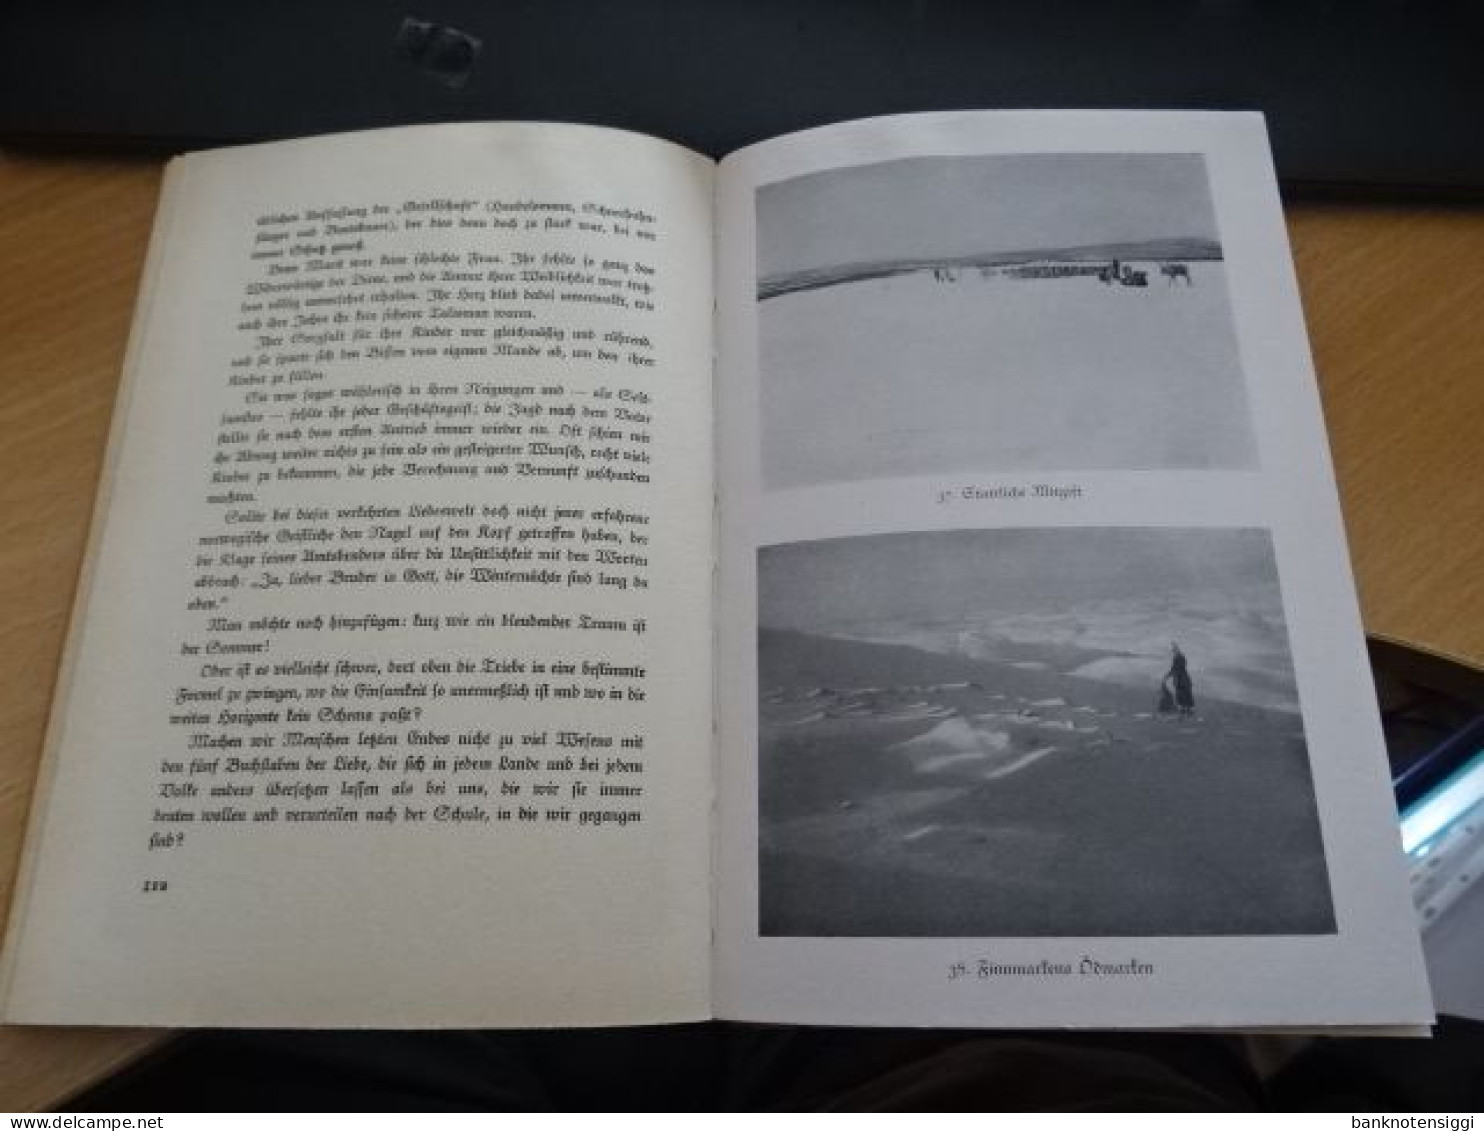 1 Buch Sonderdruck für die Luftwaffe 1926 (Erbelnisse und Waderung in Lappland)